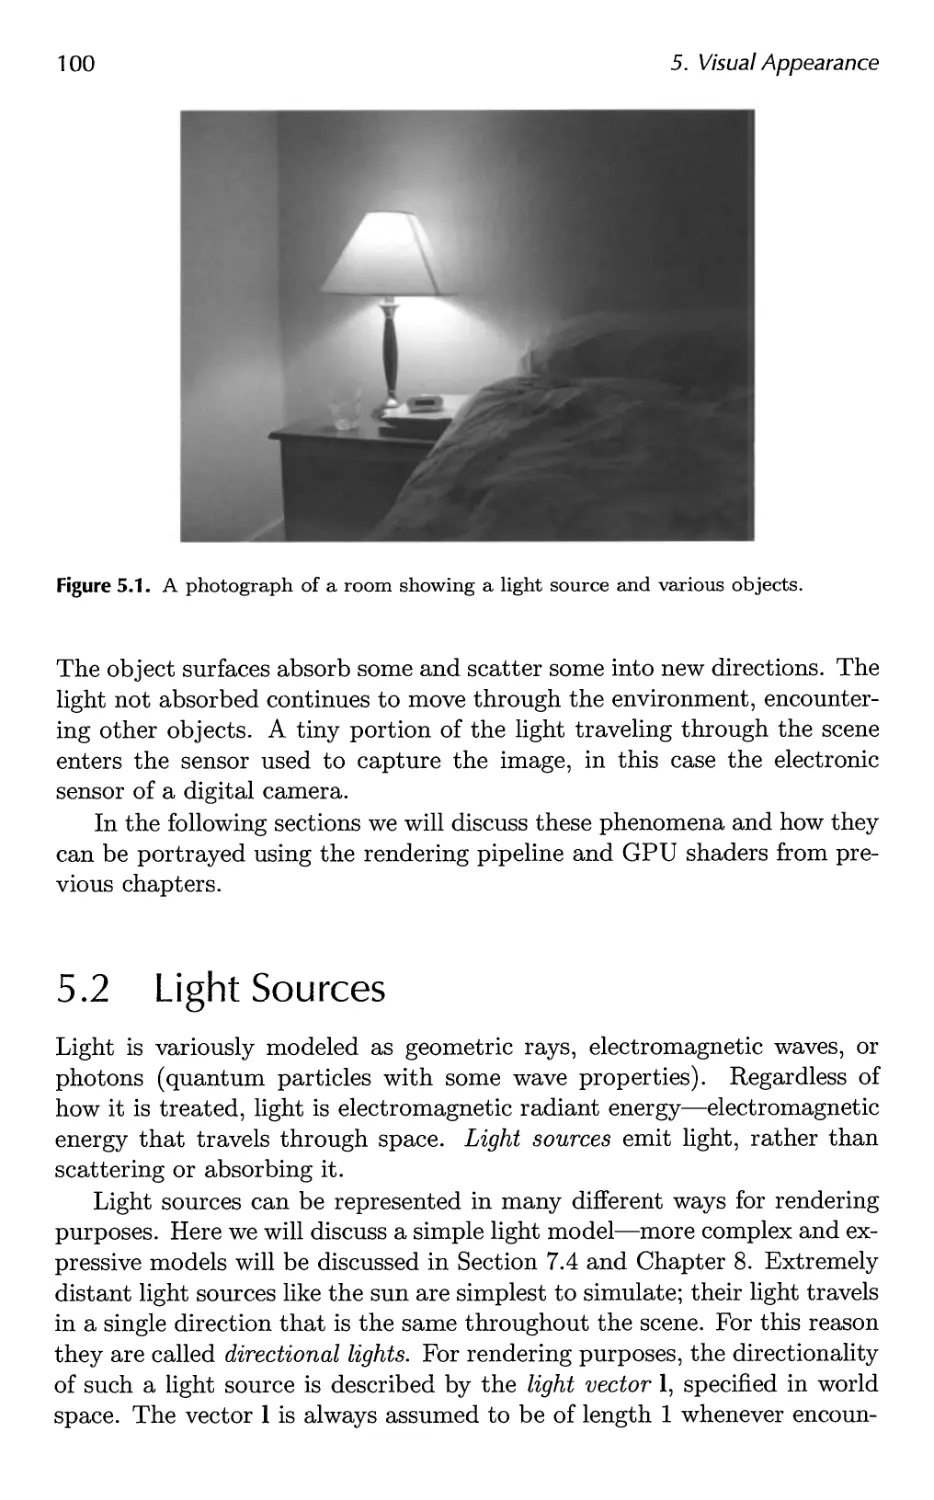 5.2 Light Sources